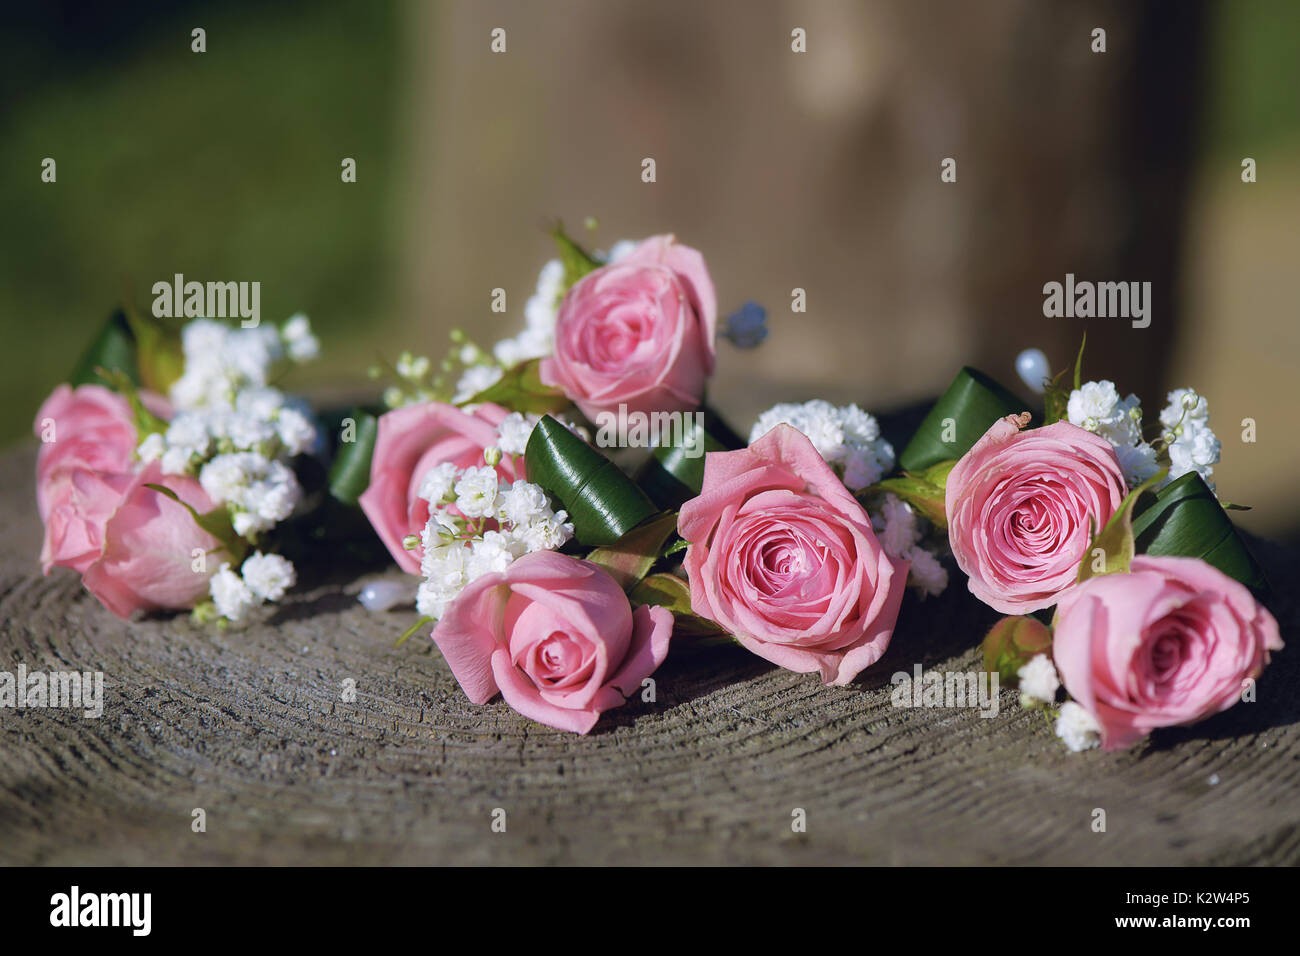 Flower Arrangement For Wedding Centerpiece Featuring Small